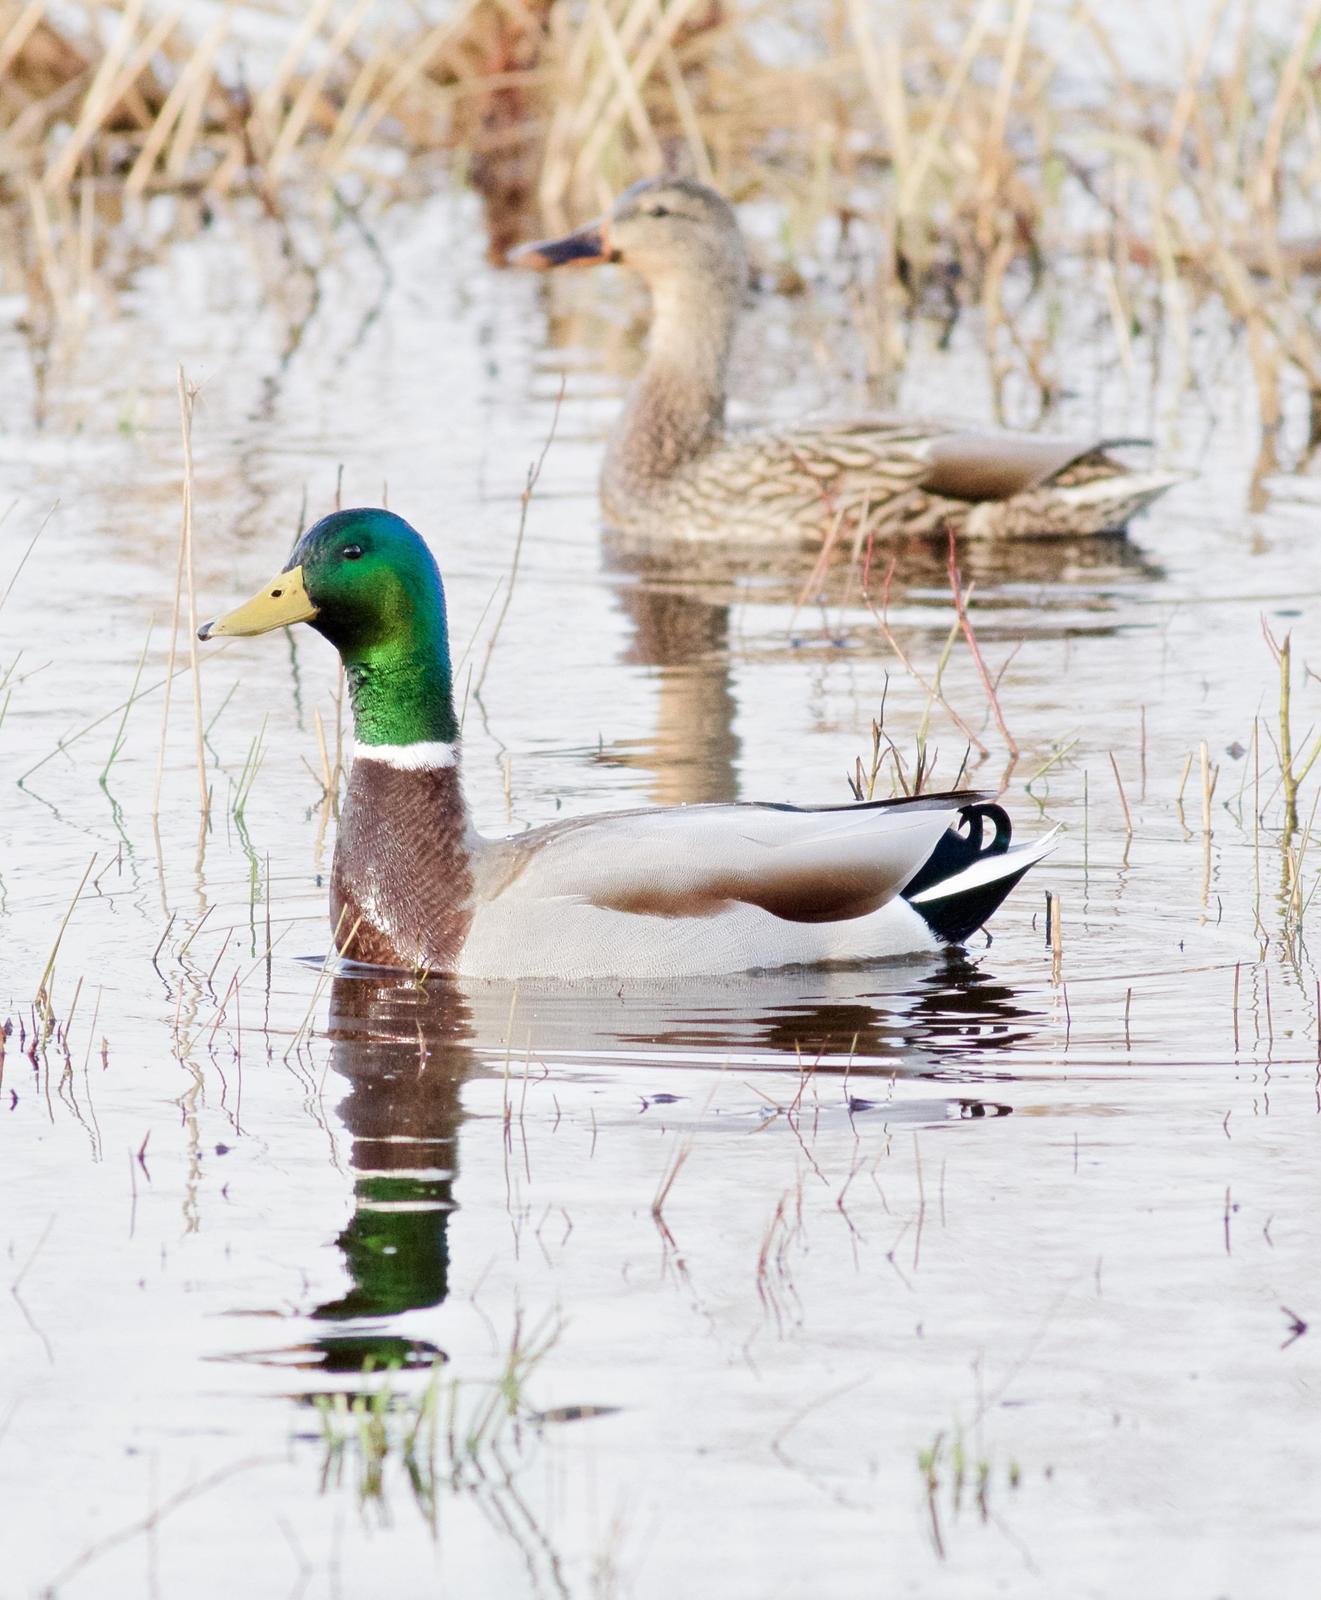 Mallard/Mexican Duck Photo by Kathryn Keith